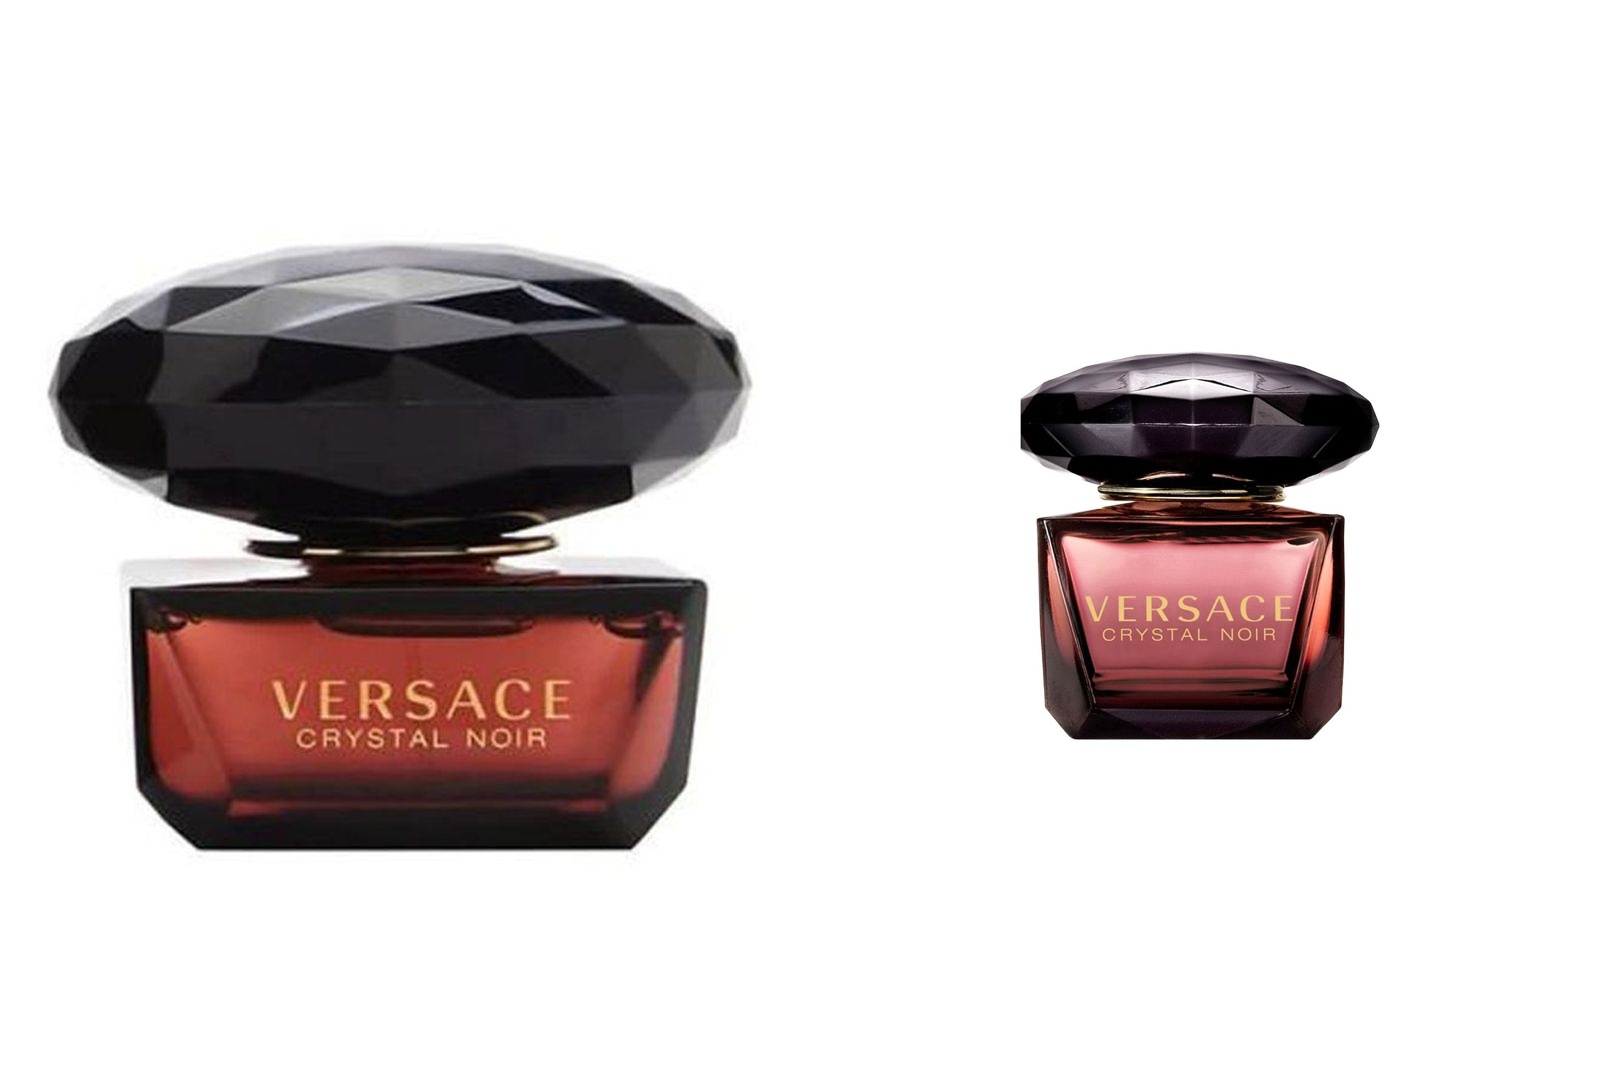 Buy Versace Bundle Offer Of Crystal Noir Edt 50ml  Edt 5ml Online in UAE  Sharaf DG